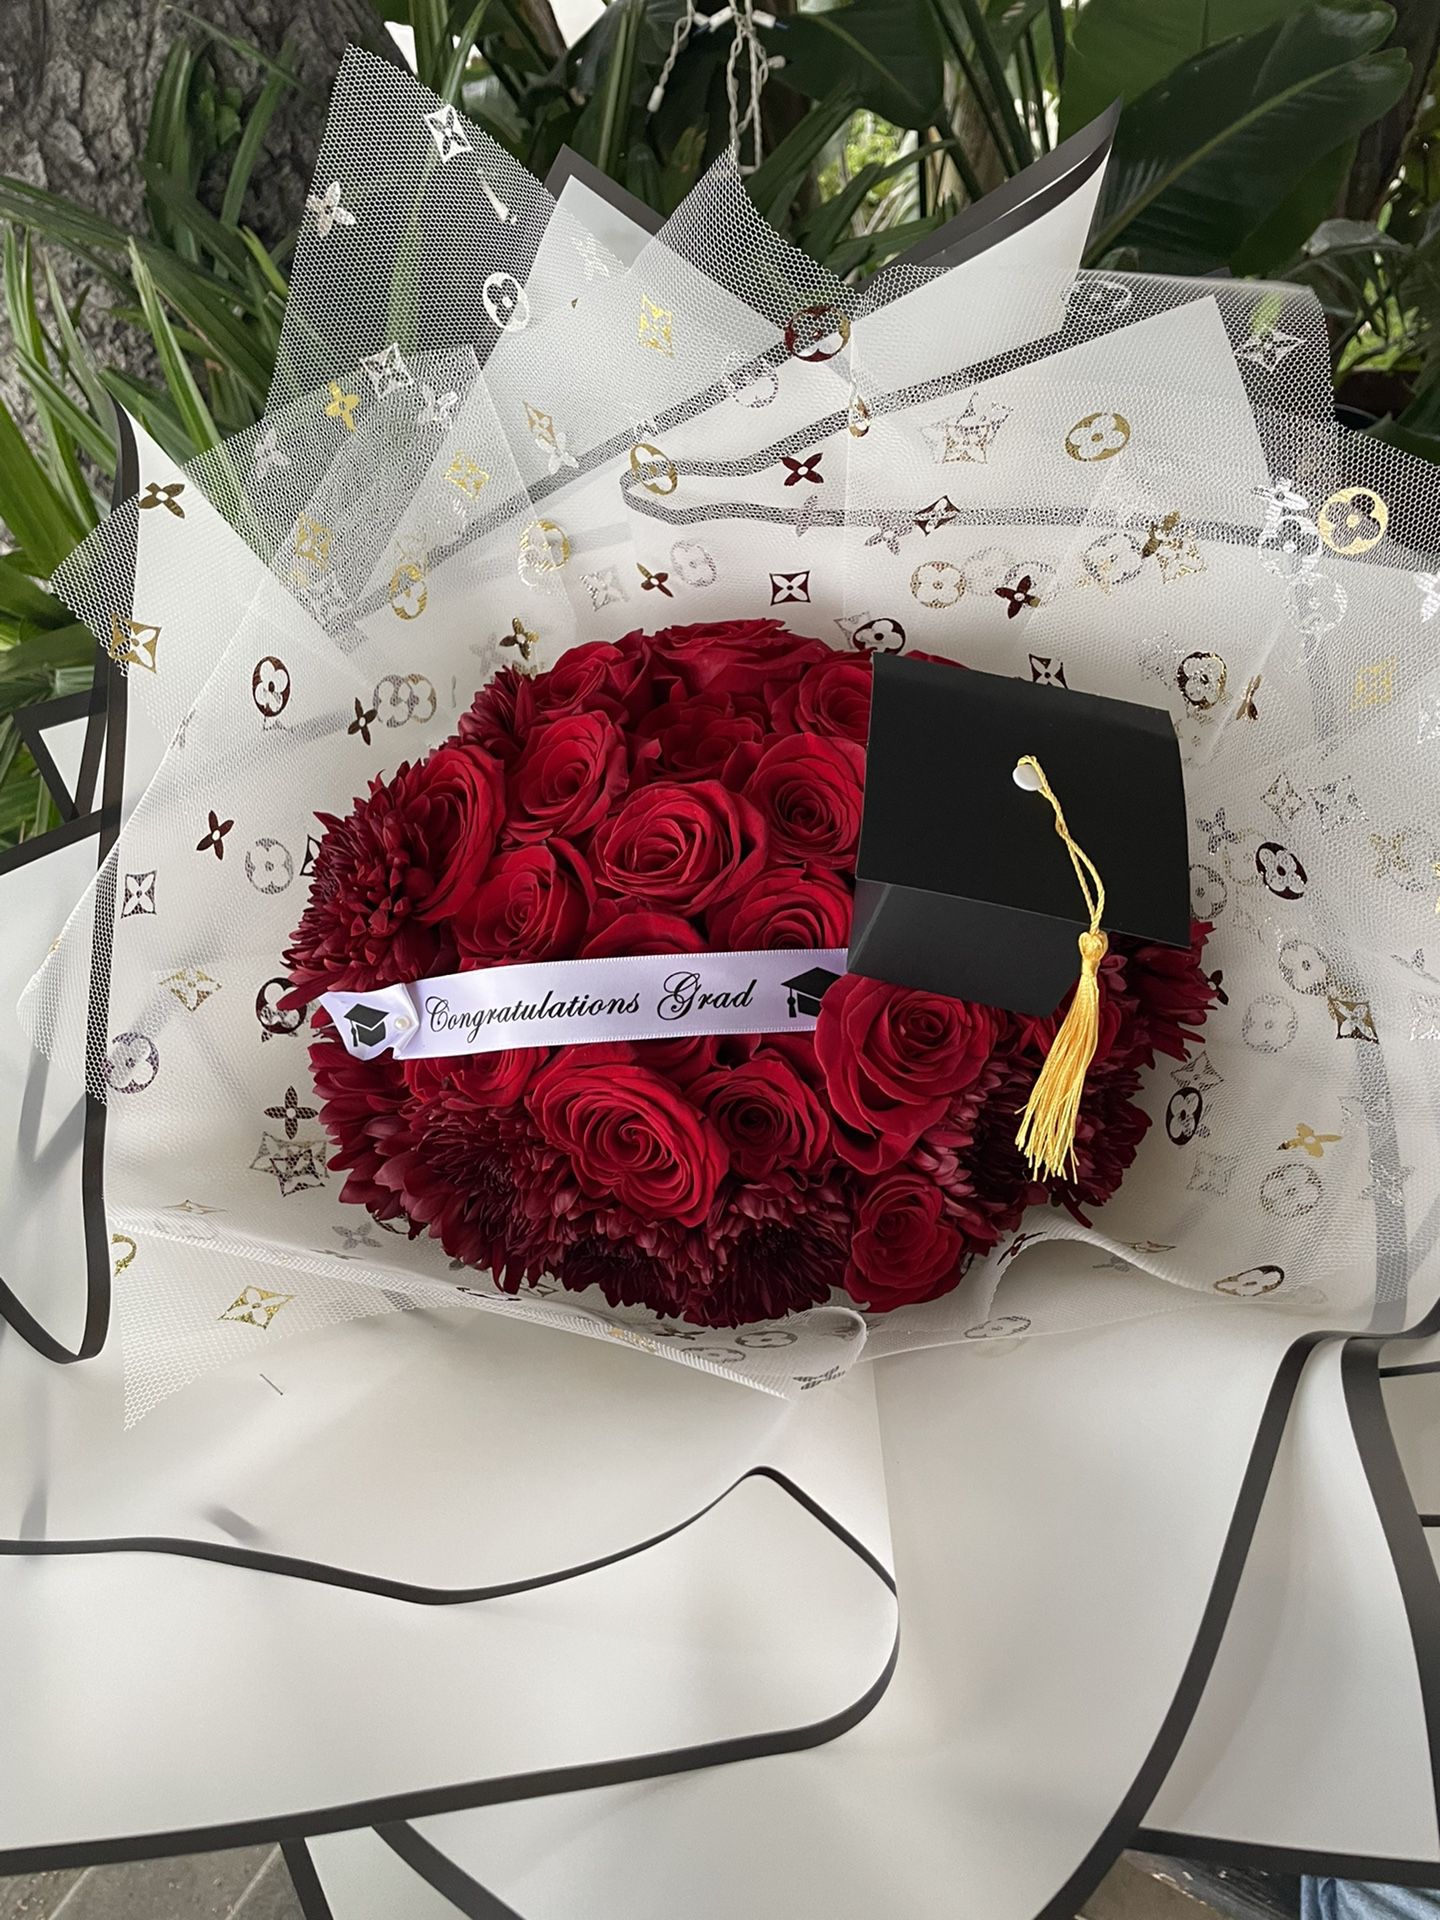 Graduation bouquet